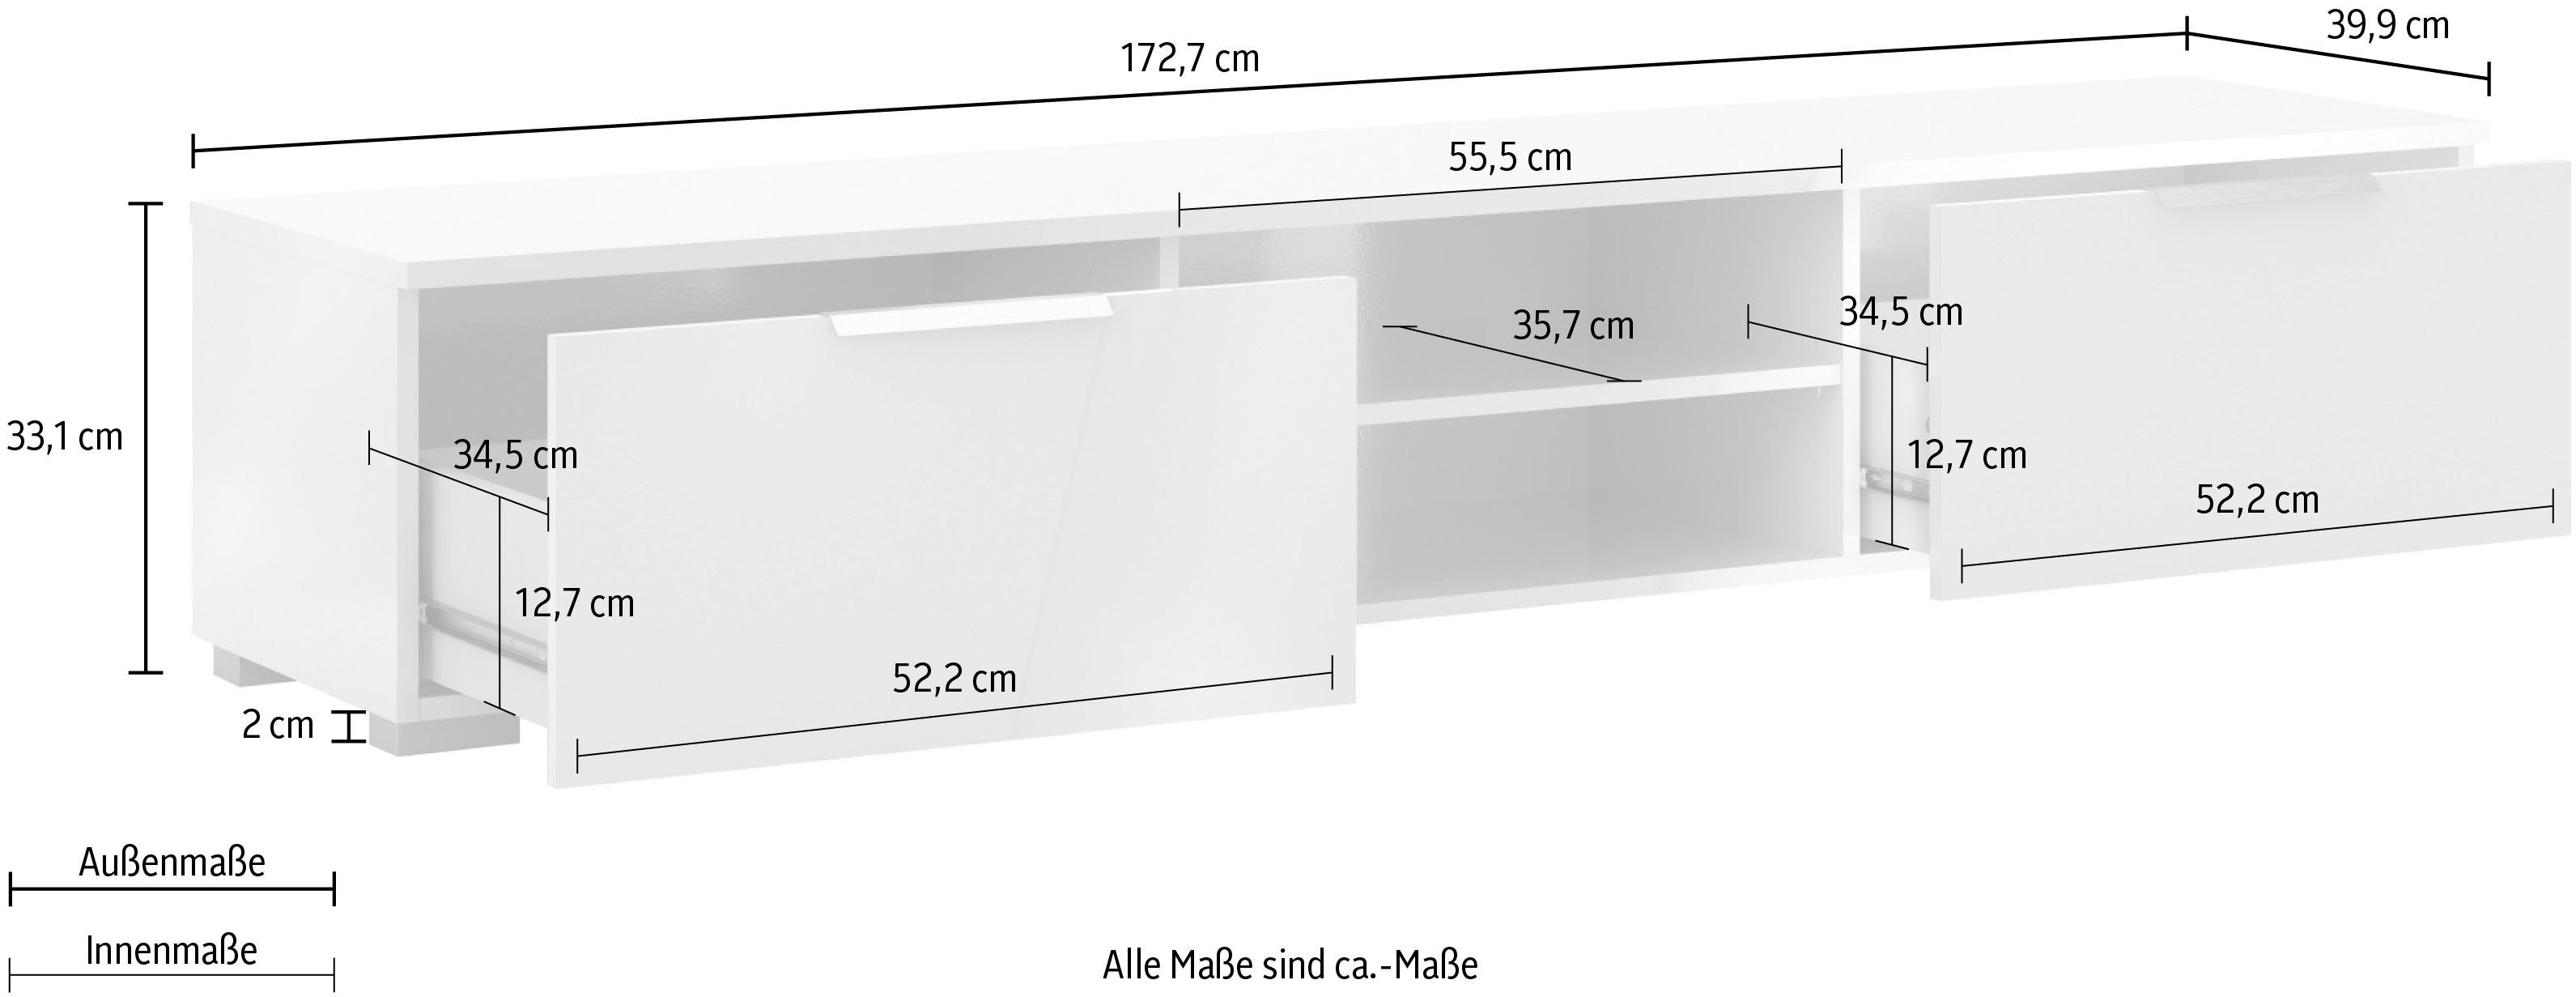 Breite Hochglanz in Home Match, weiß Farbvarianten, cm 172,7 TV-Board Oberfläche, pflegeleichte affaire